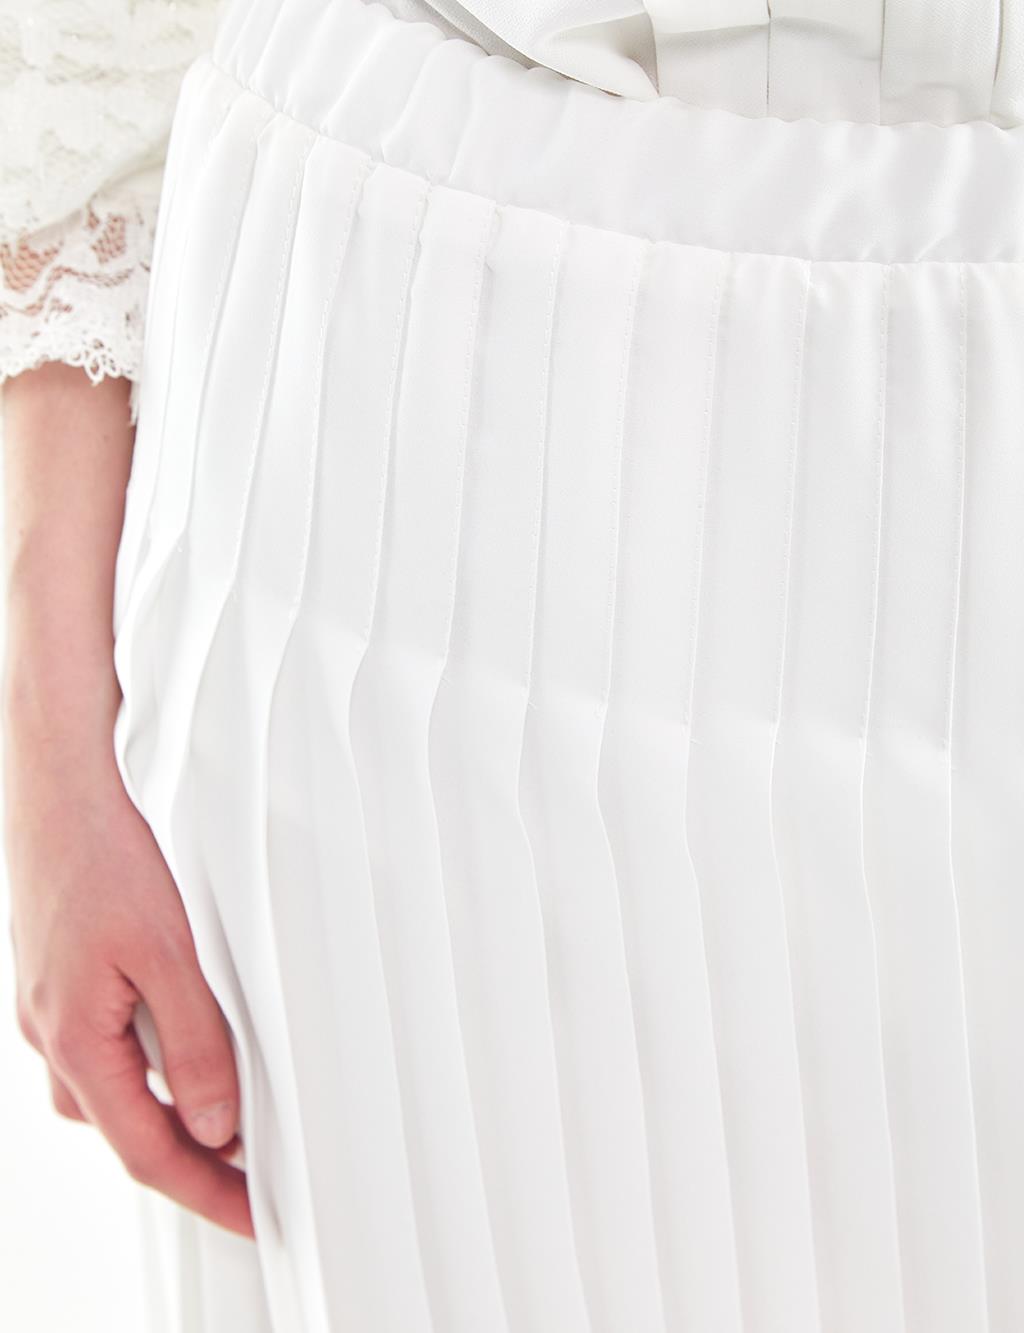 Pleated Skirt White